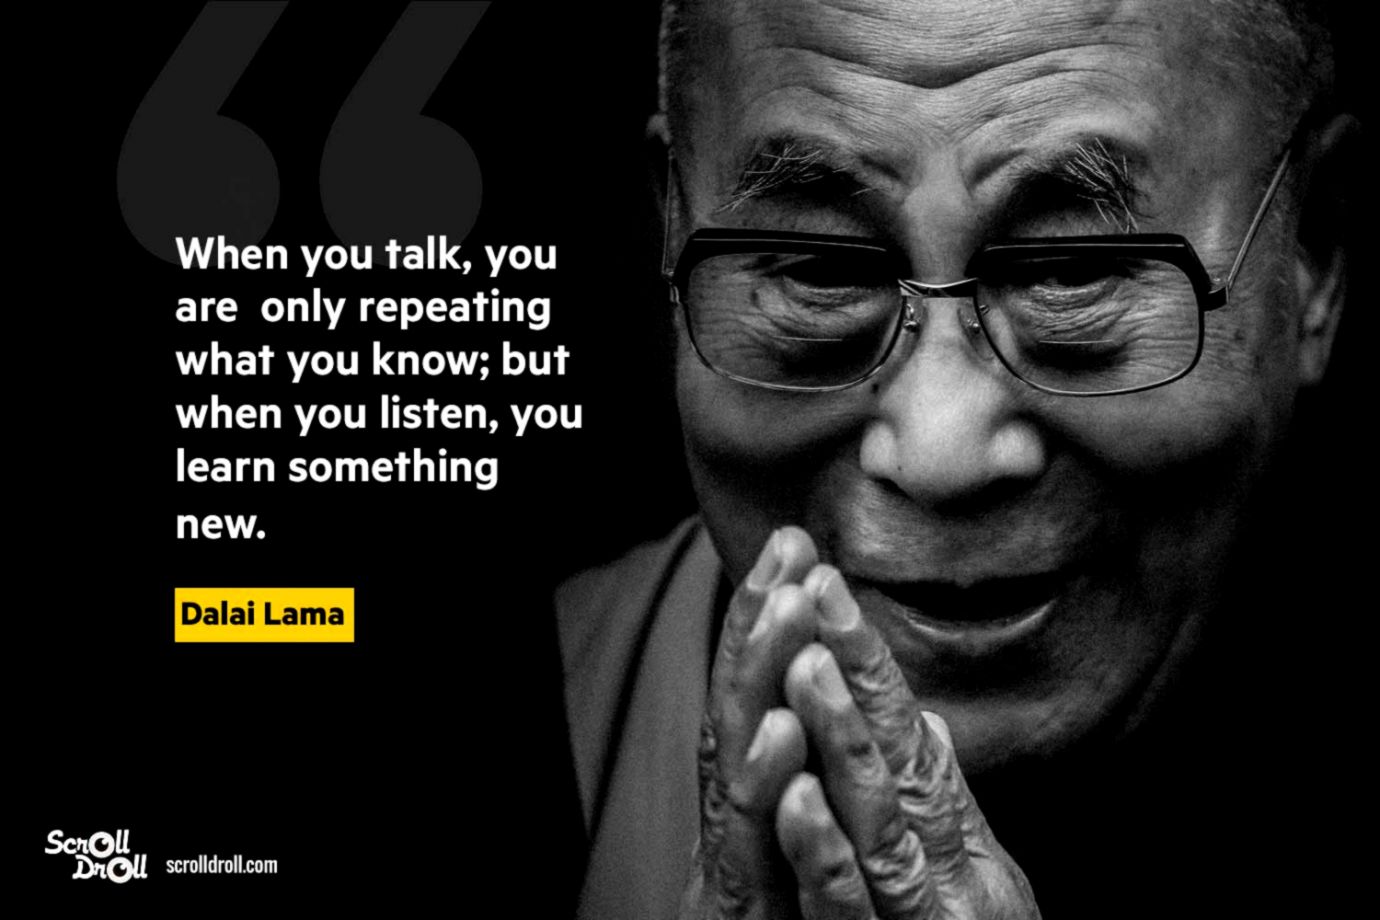 Dalai Lama Quoted | Desktop Wallpapers